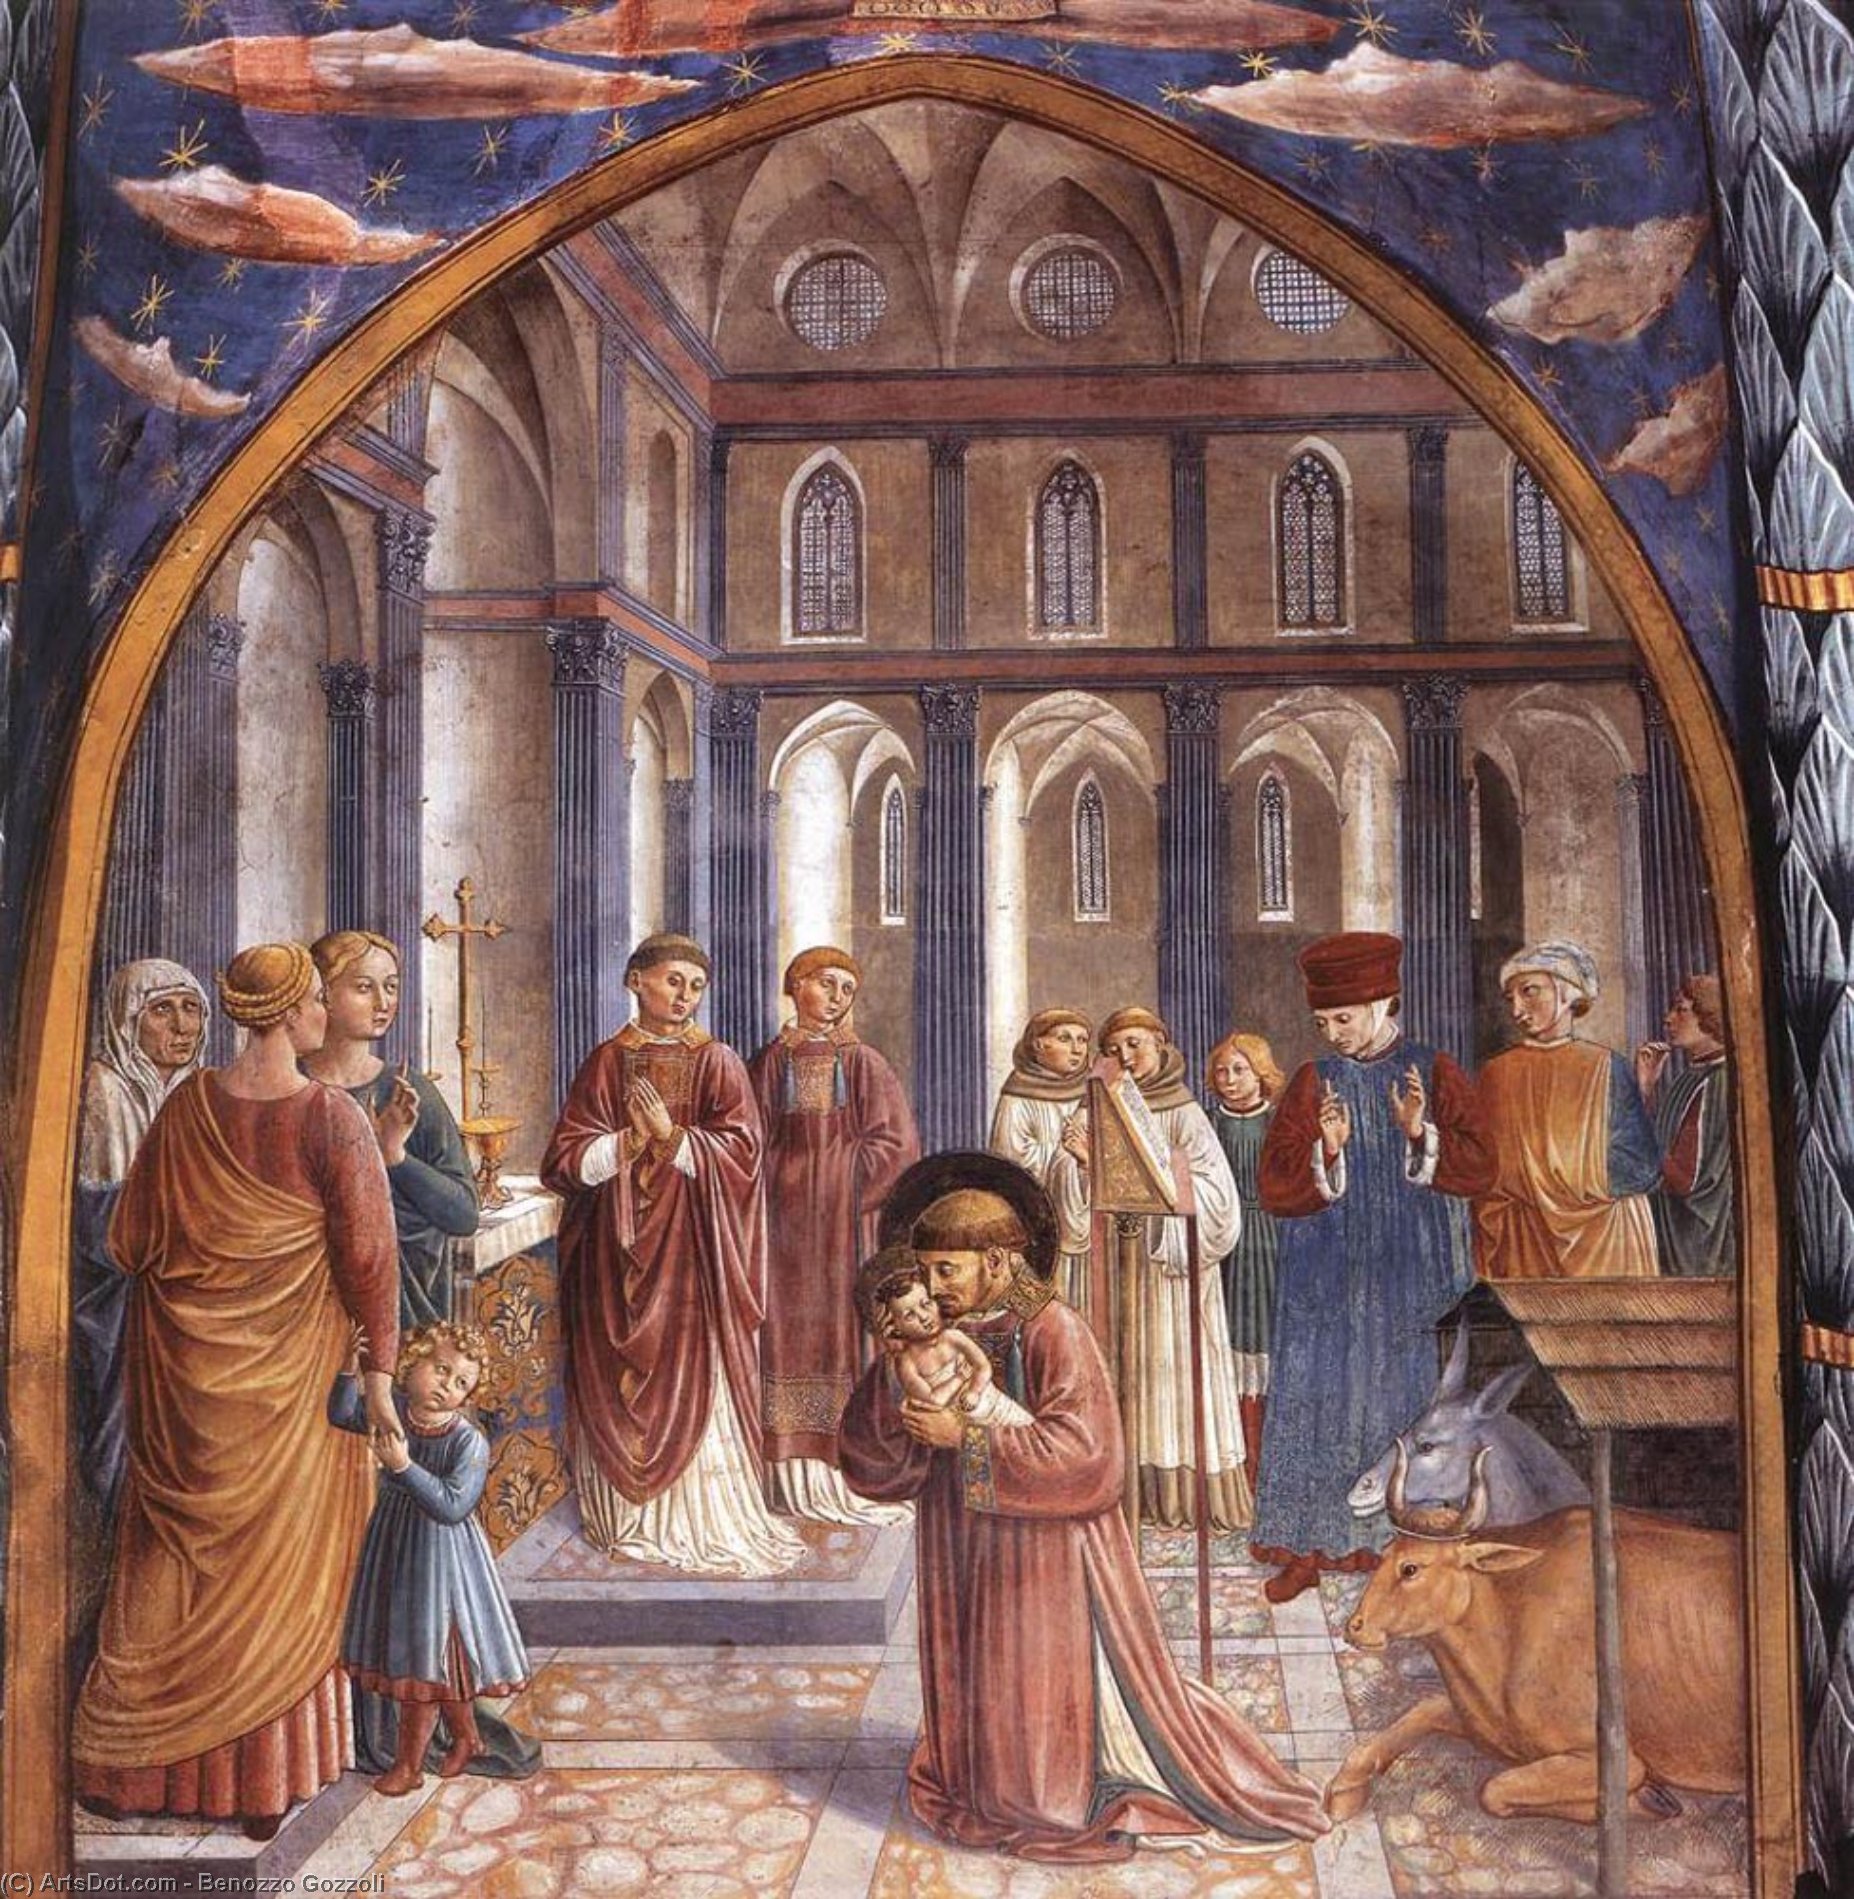 Wikioo.org - Bách khoa toàn thư về mỹ thuật - Vẽ tranh, Tác phẩm nghệ thuật Benozzo Gozzoli - Scenes from the Life of St Francis (Scene 9, north wall)